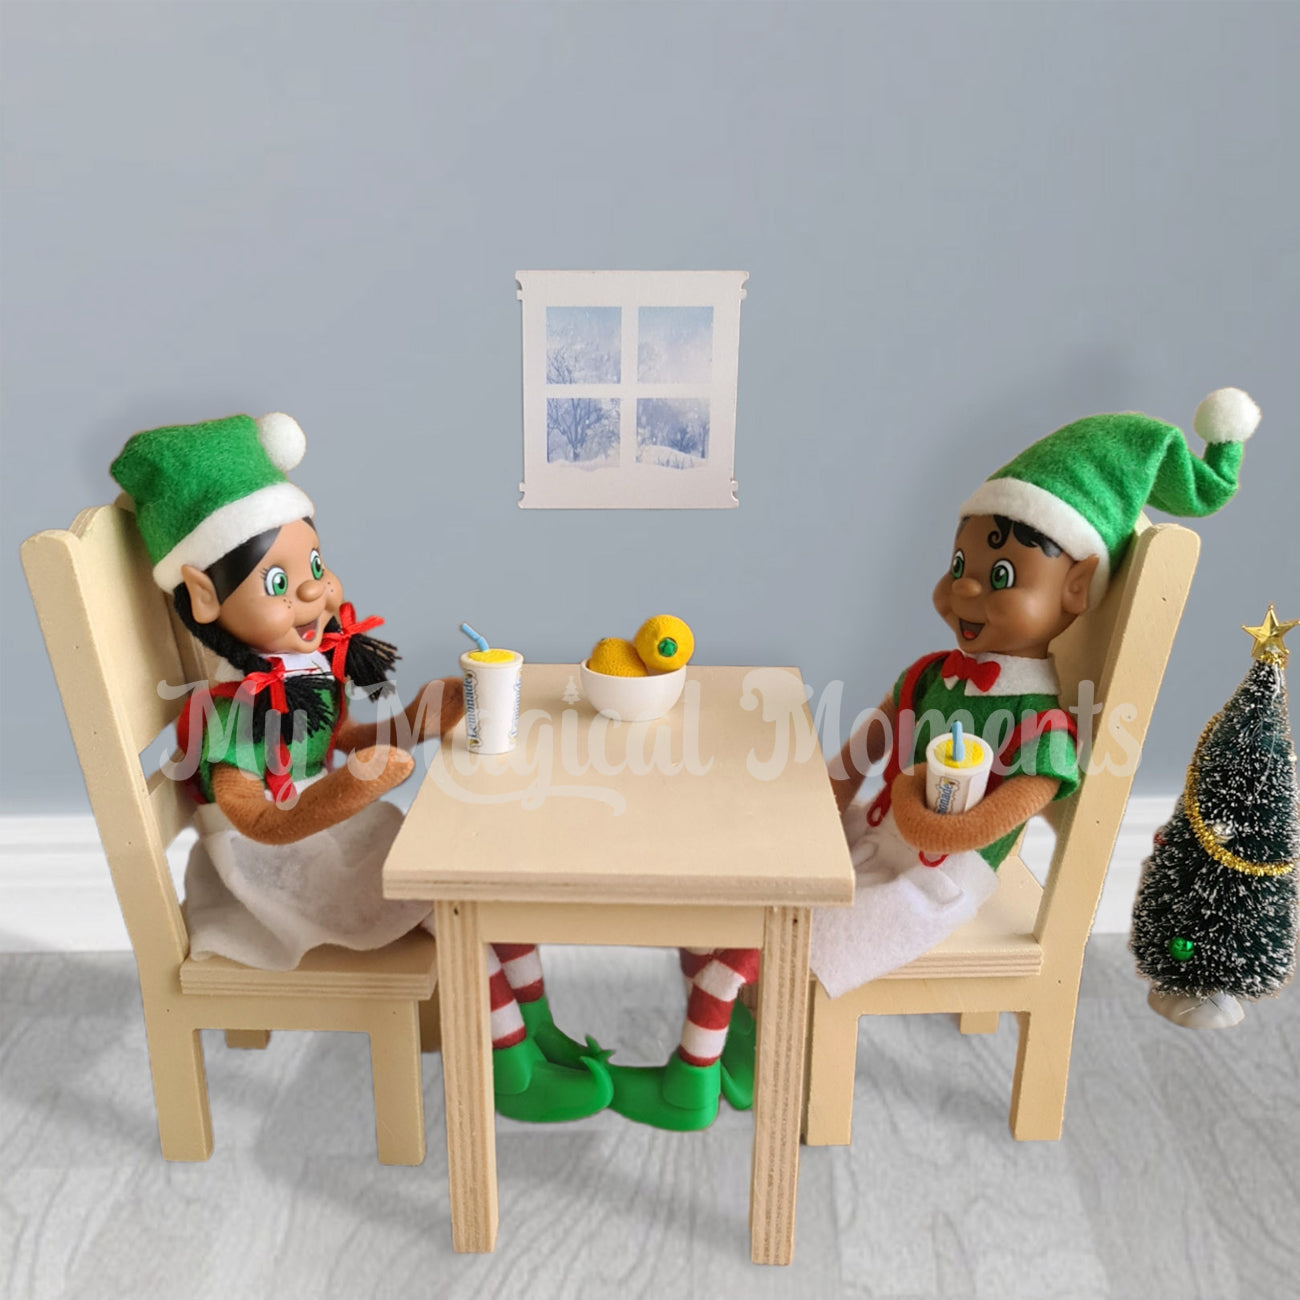 Black hair elves having lemonade on a wooden table